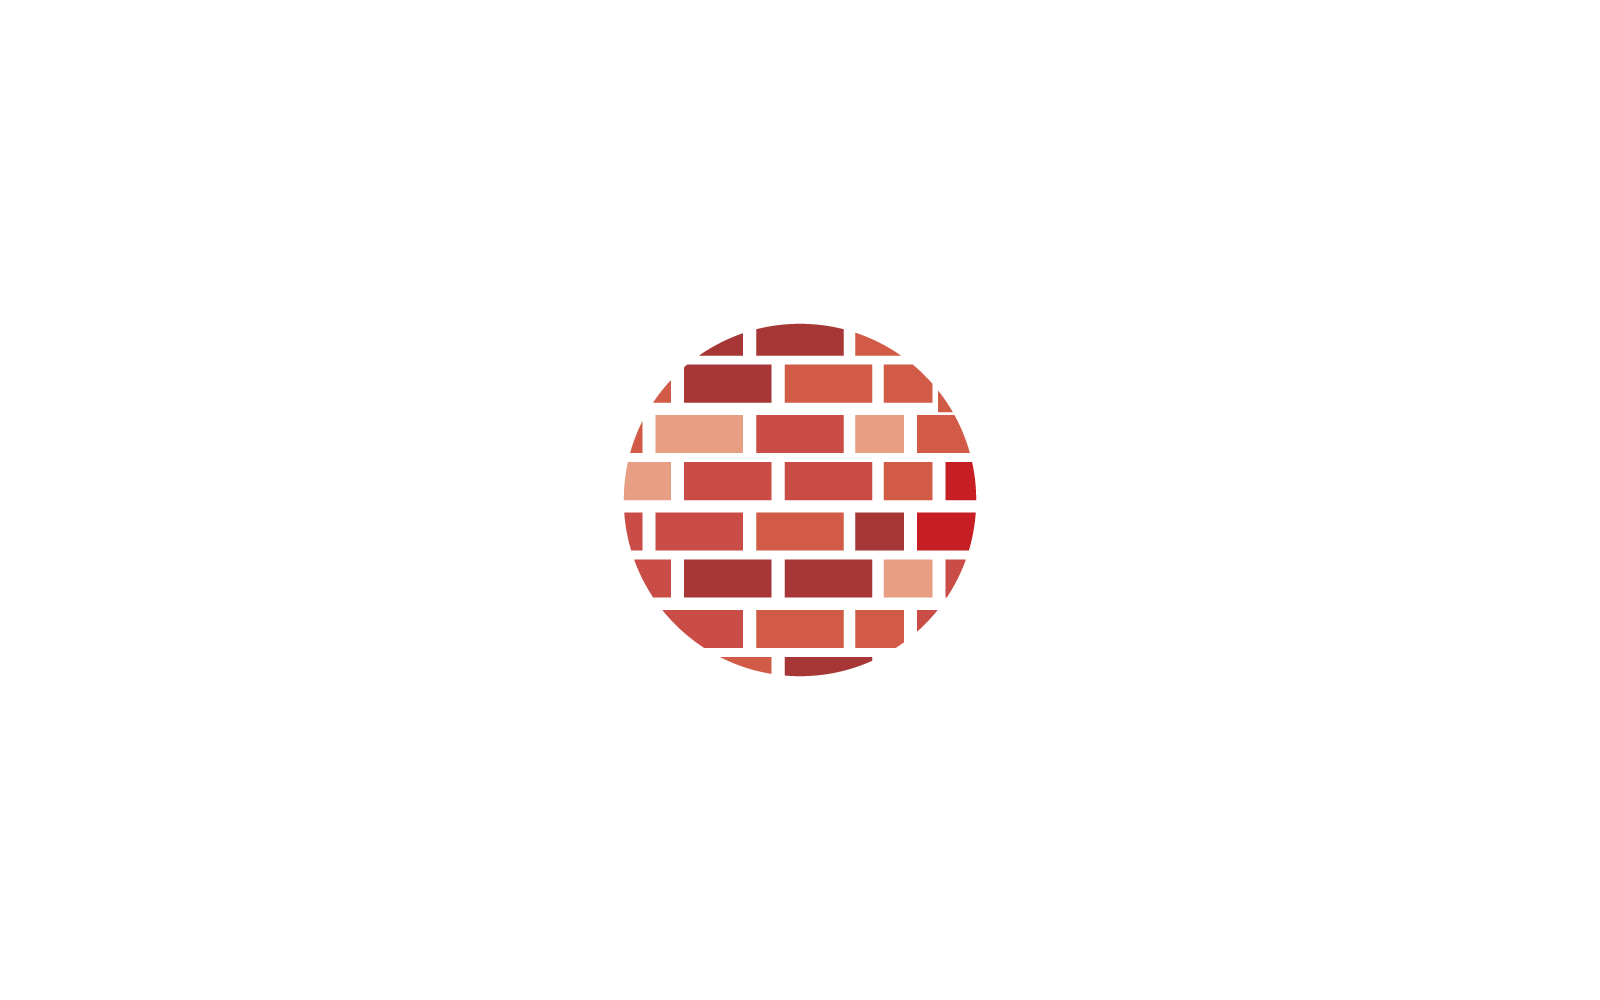 Disegno dell'illustrazione vettoriale dell'icona del logo del muro di mattoni